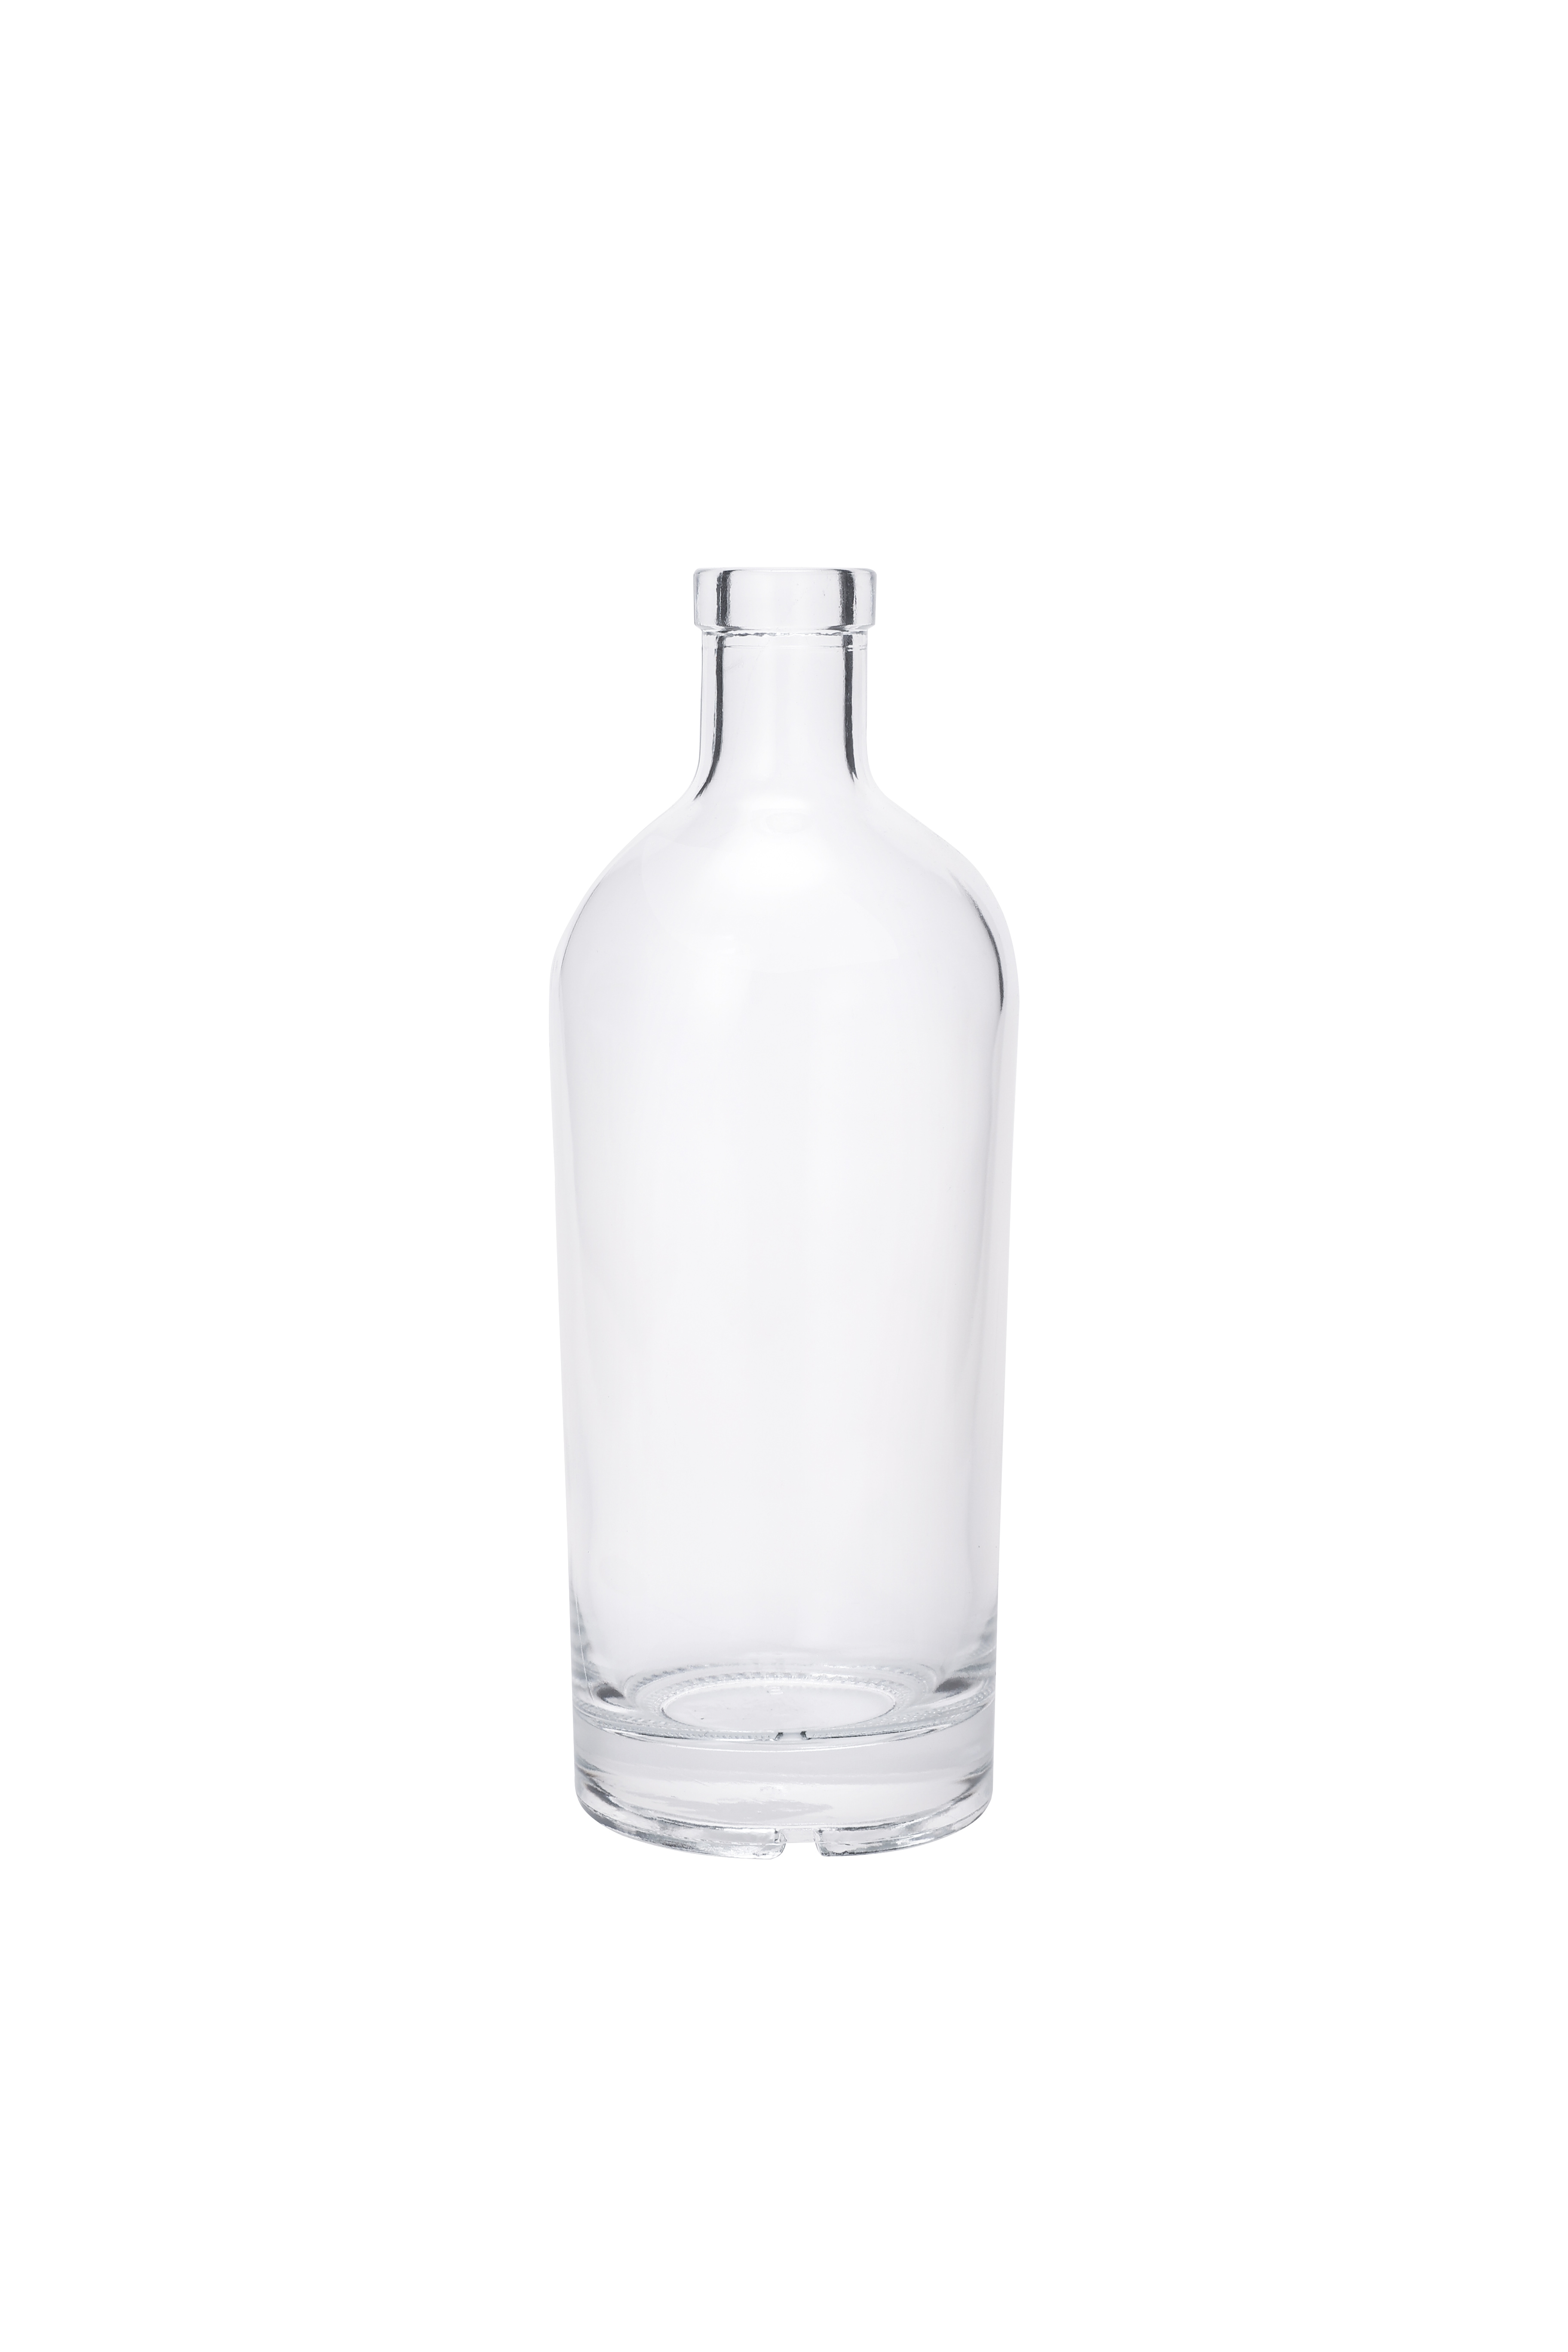 Empty Spirits Glass Alcohol Liquor Gift Bottles